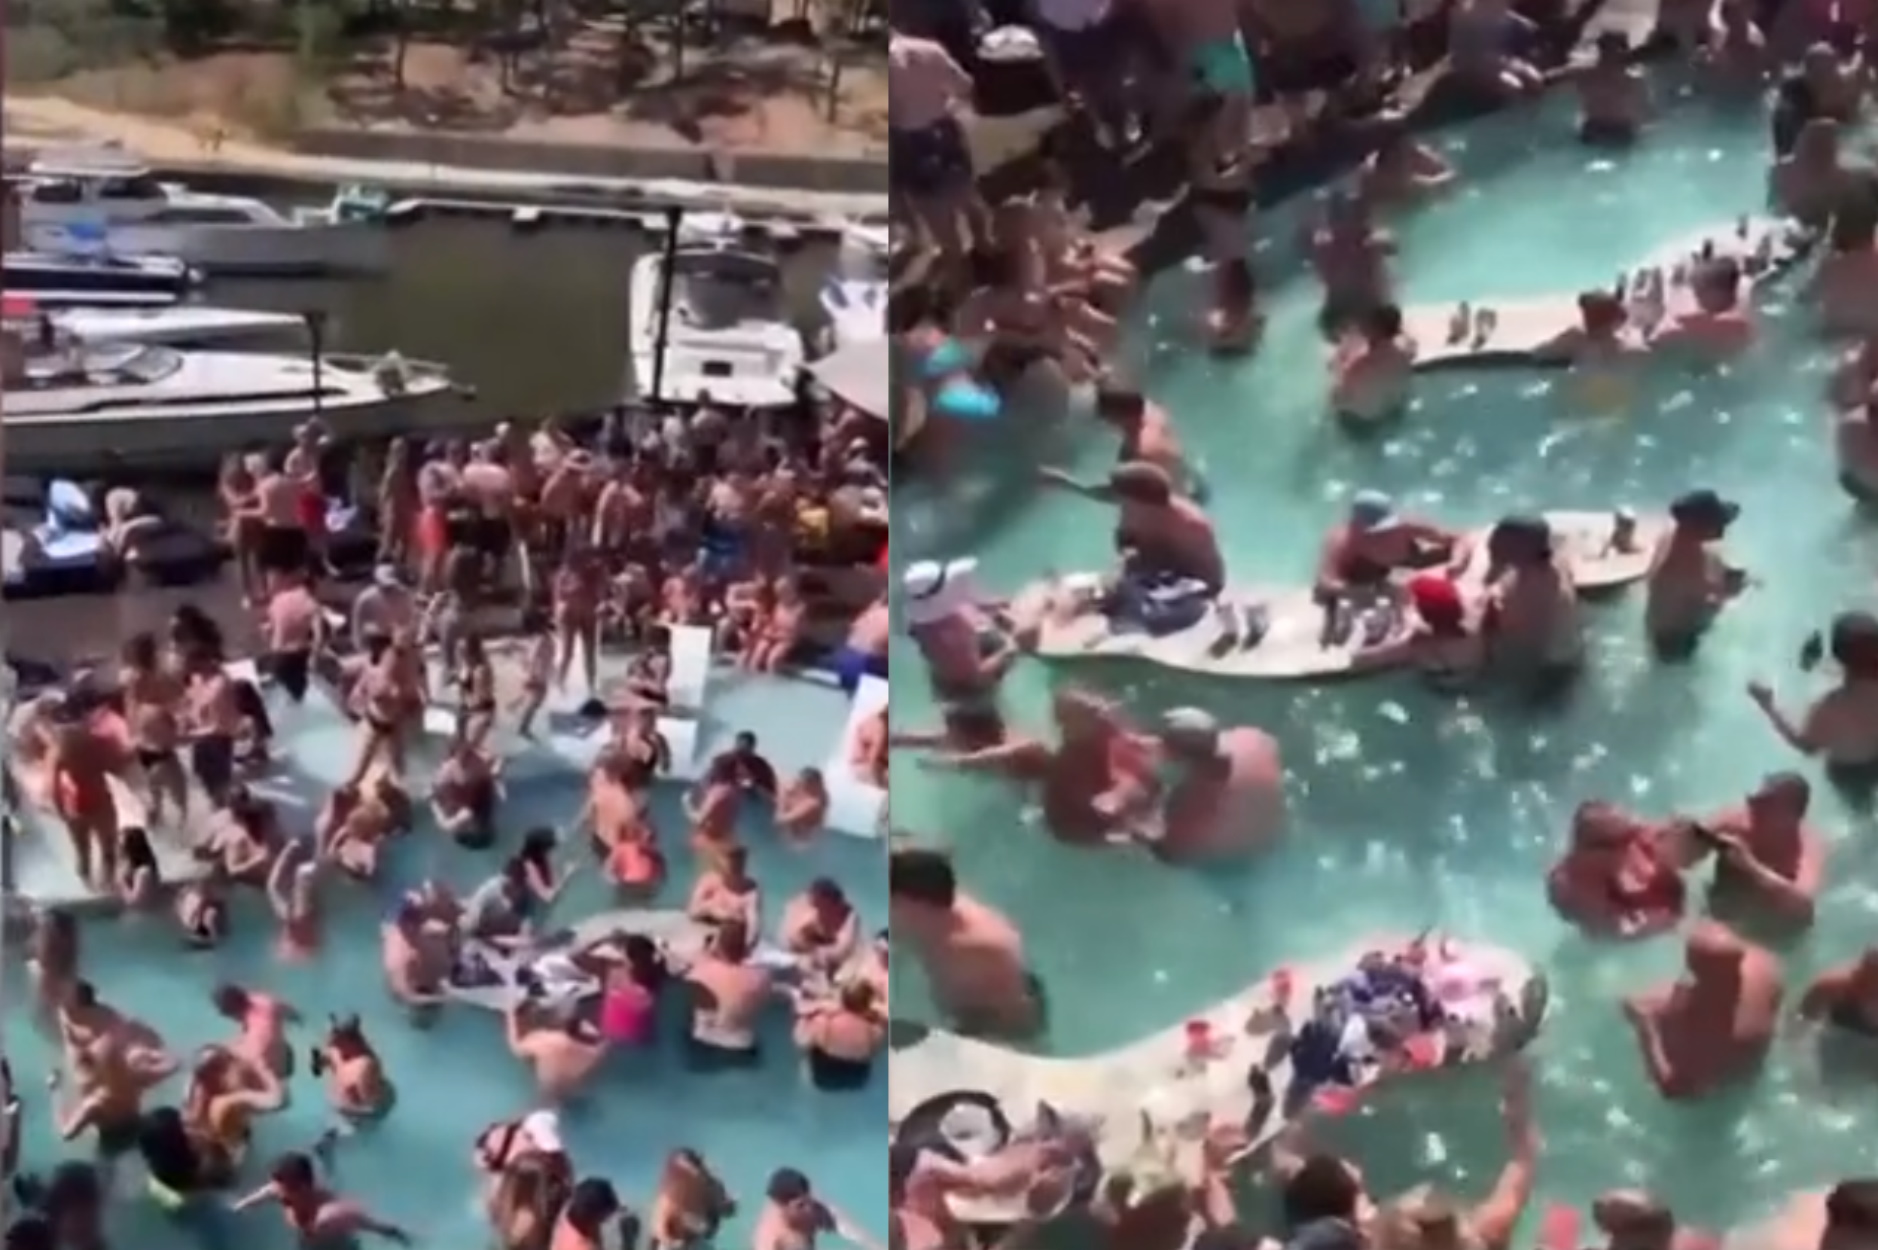 Βίντεο που σοκάρει: Απίστευτος συνωστισμός σε ξέφρενο πάρτι σε πισίνα!